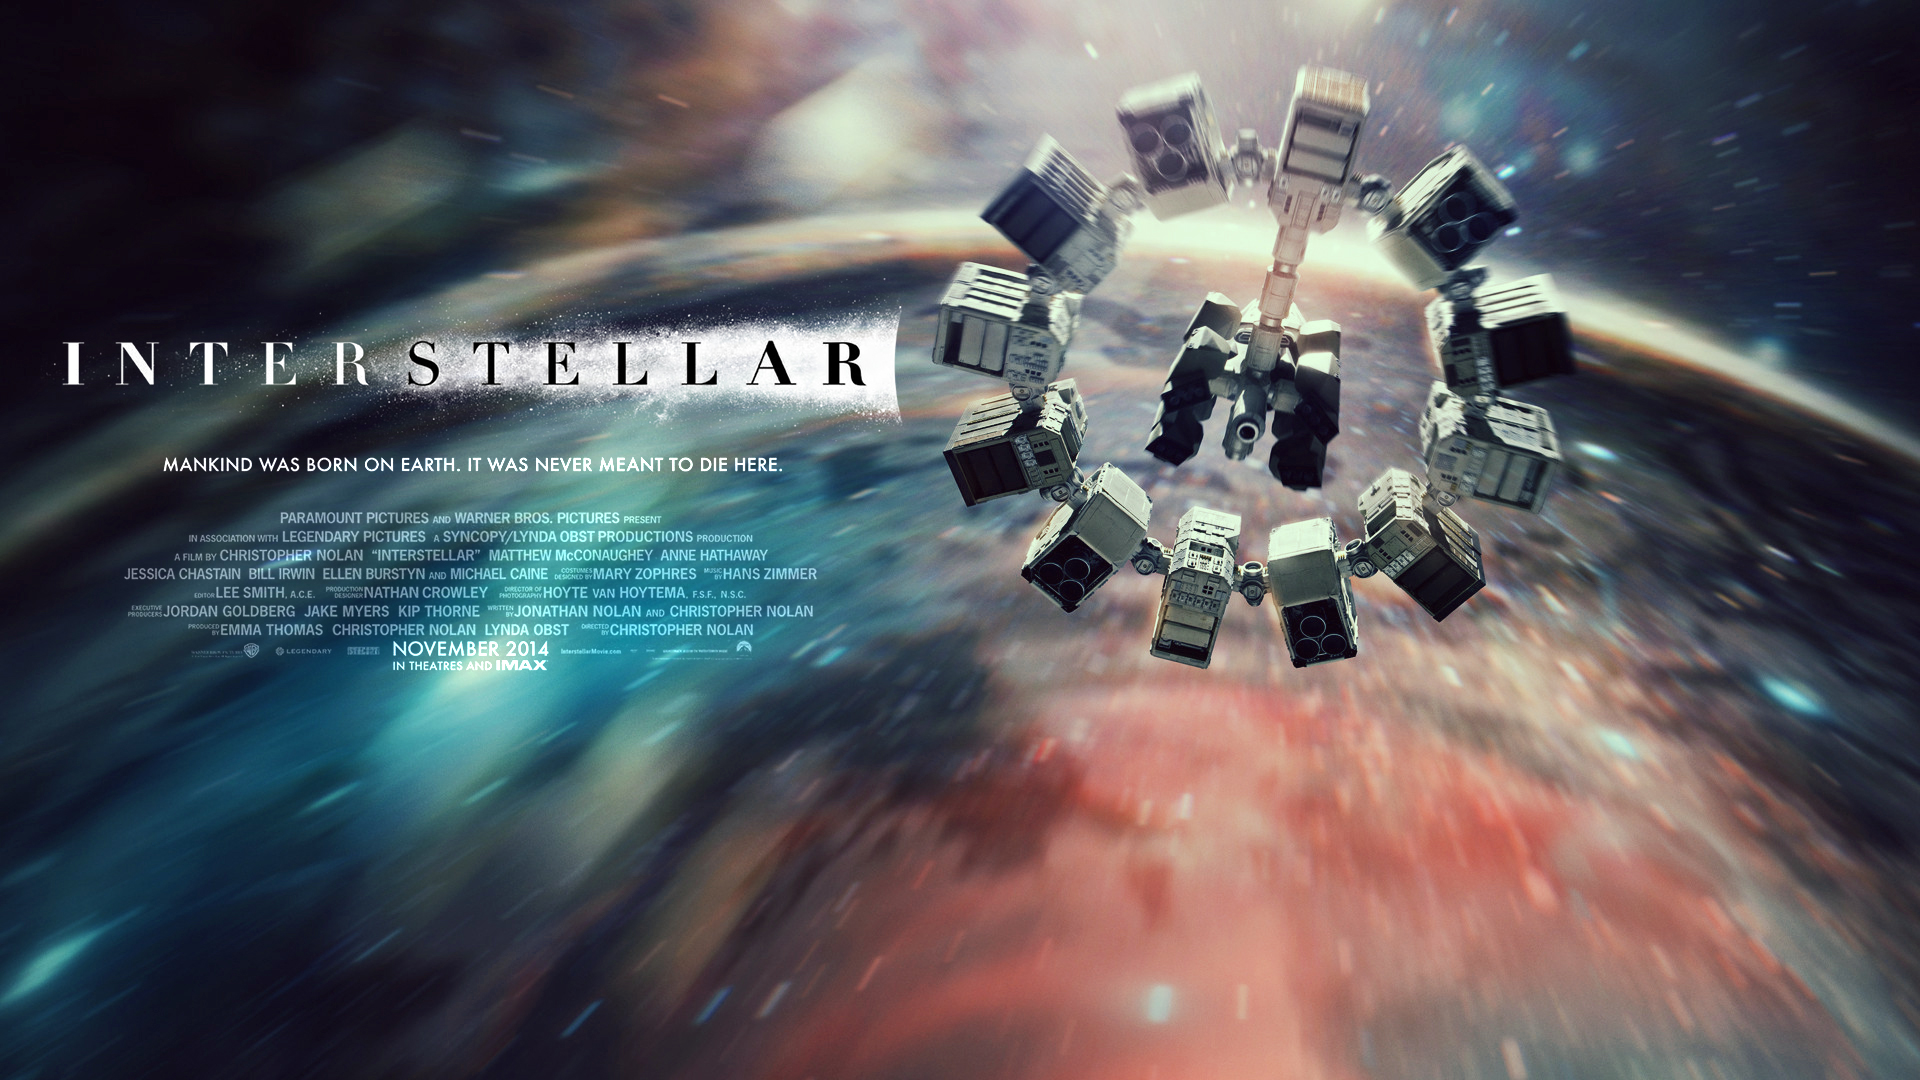 interstellar_wallpaper_by_nordlingart-d8093yr.jpg